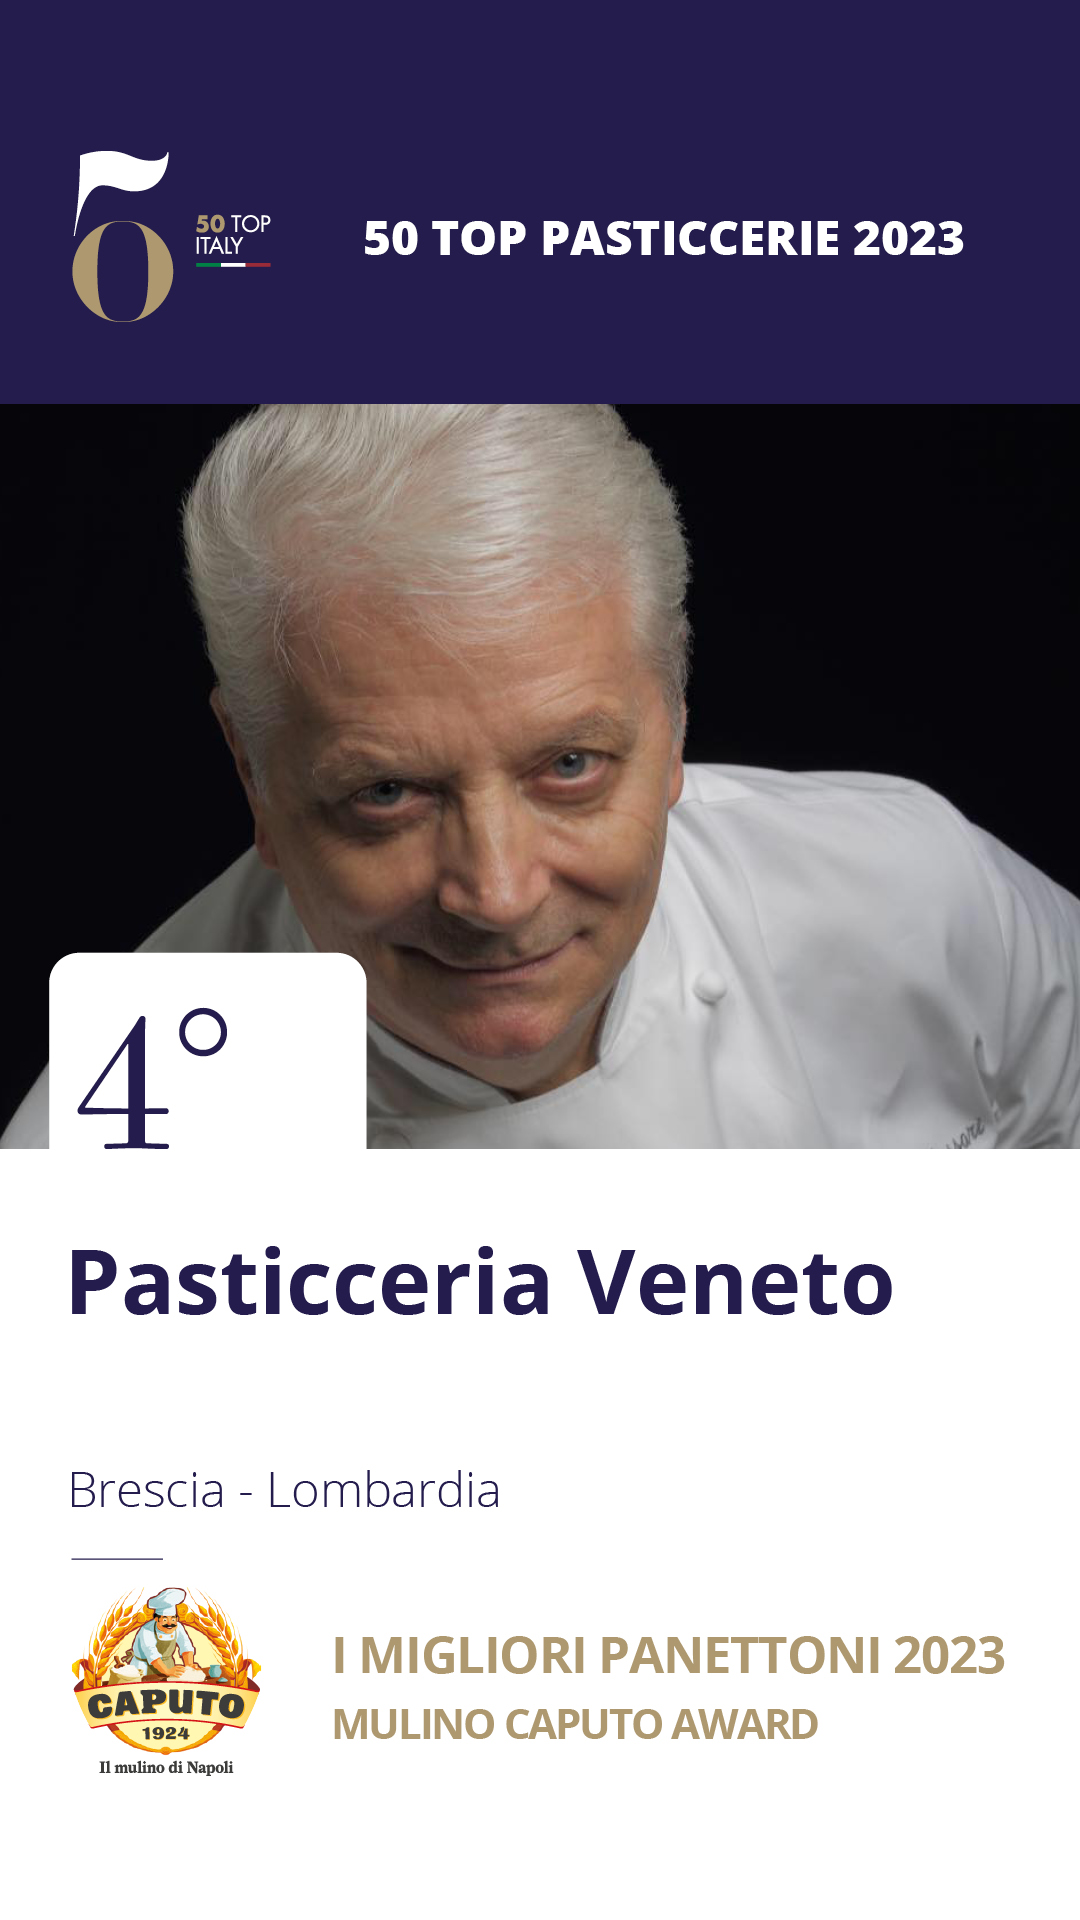 4 - Pasticceria Veneto - Brescia, Lombardia